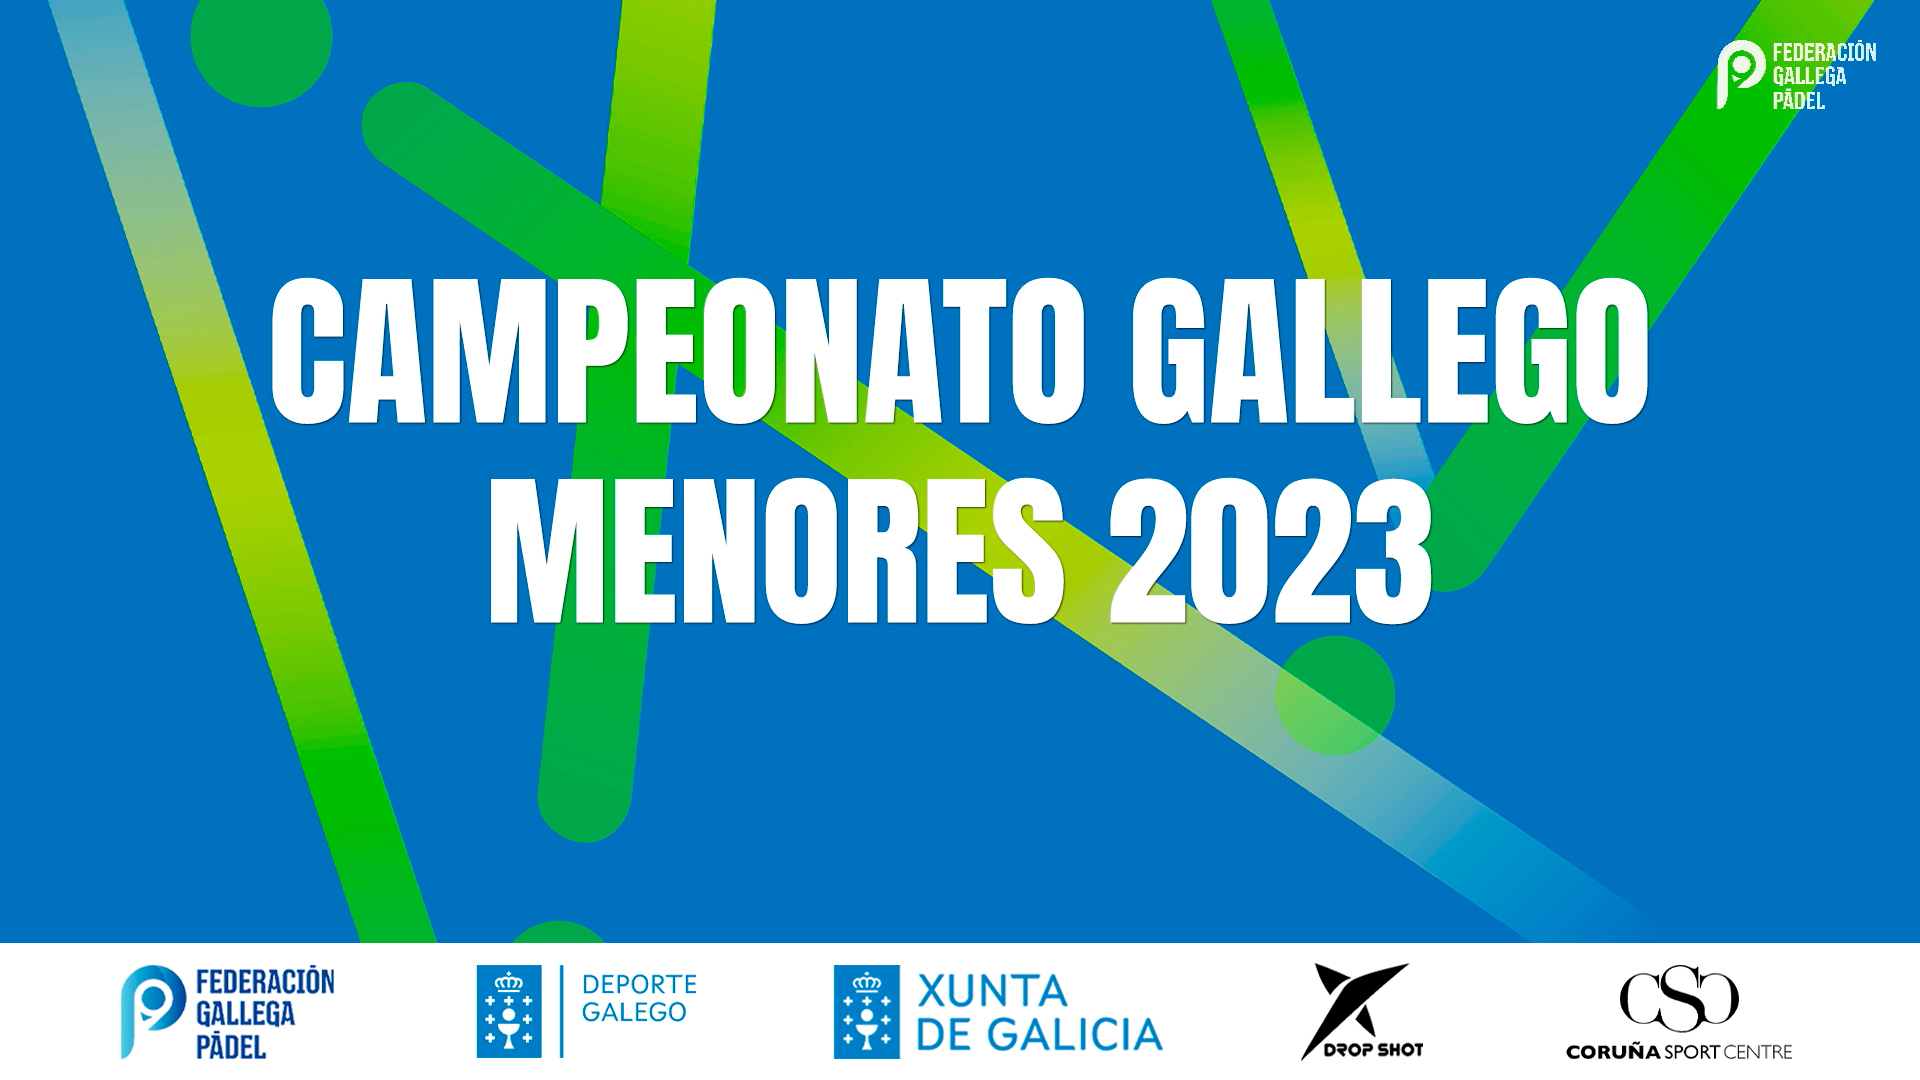 Campeonato Gallego Menores 2023